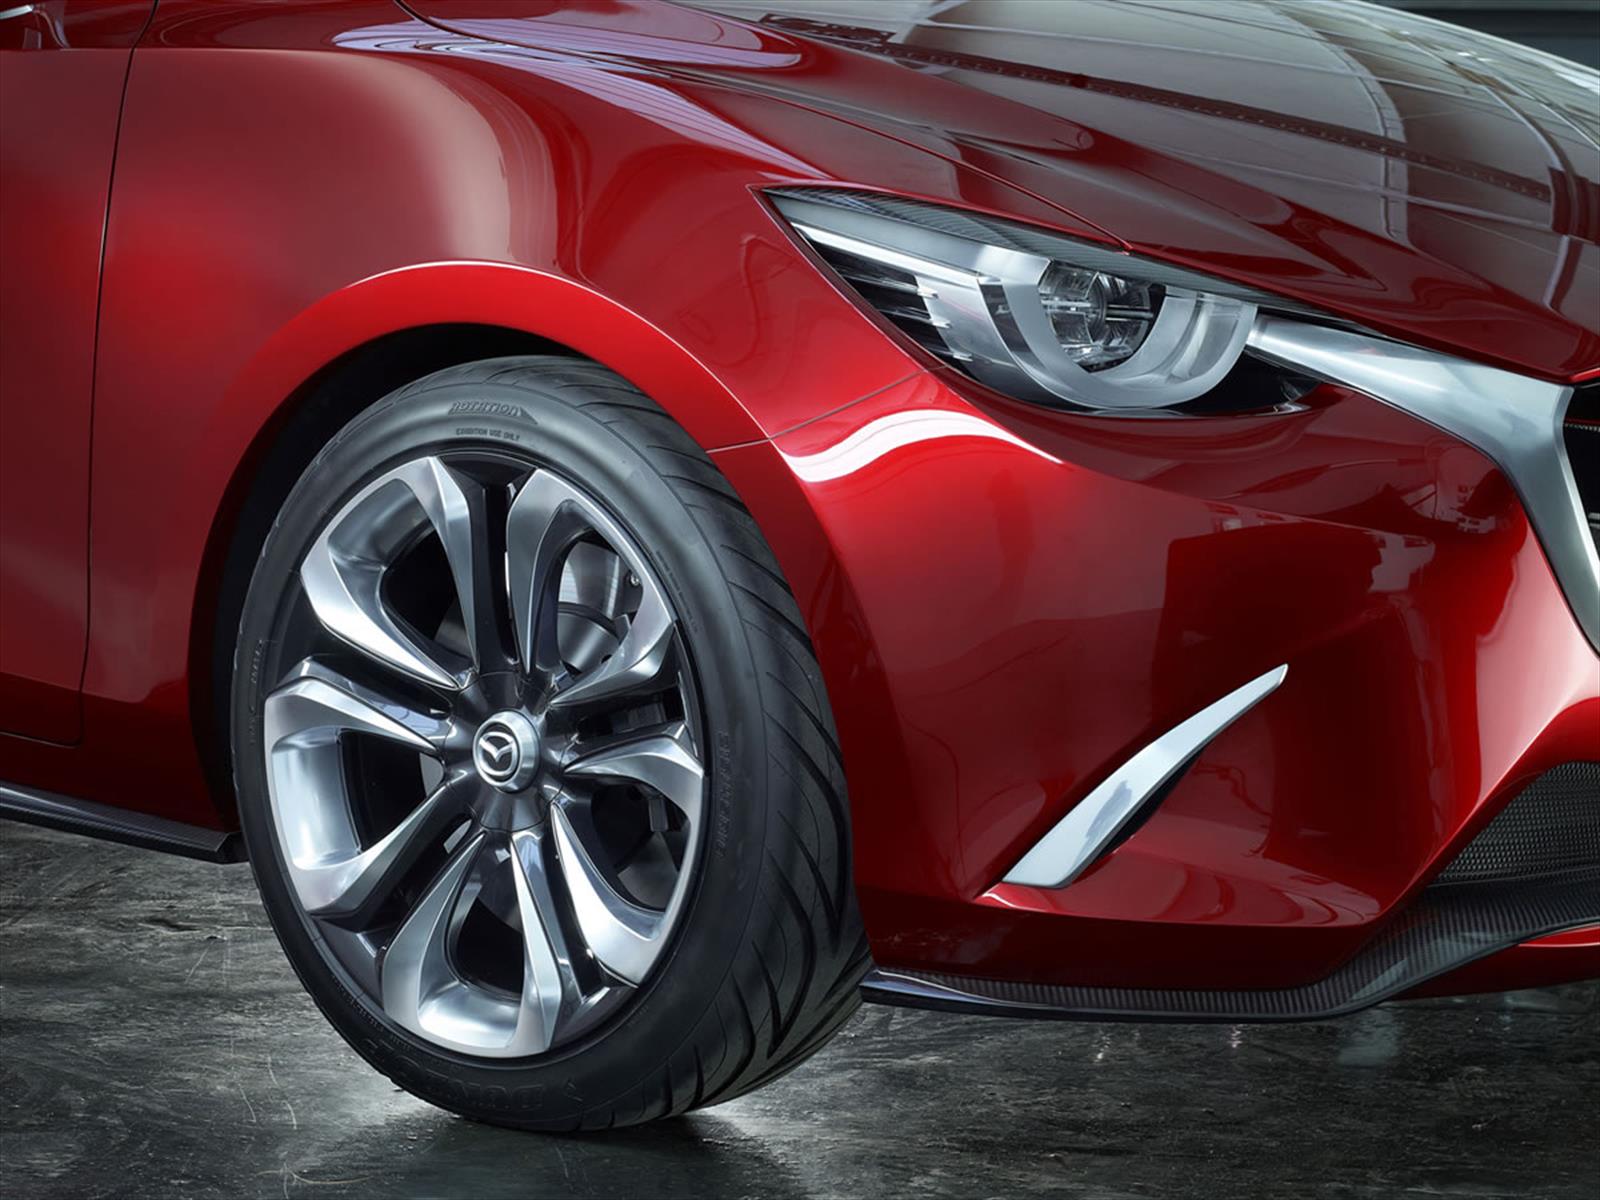 Mazda 2 2015 Primeros Antecedentes Oficiales